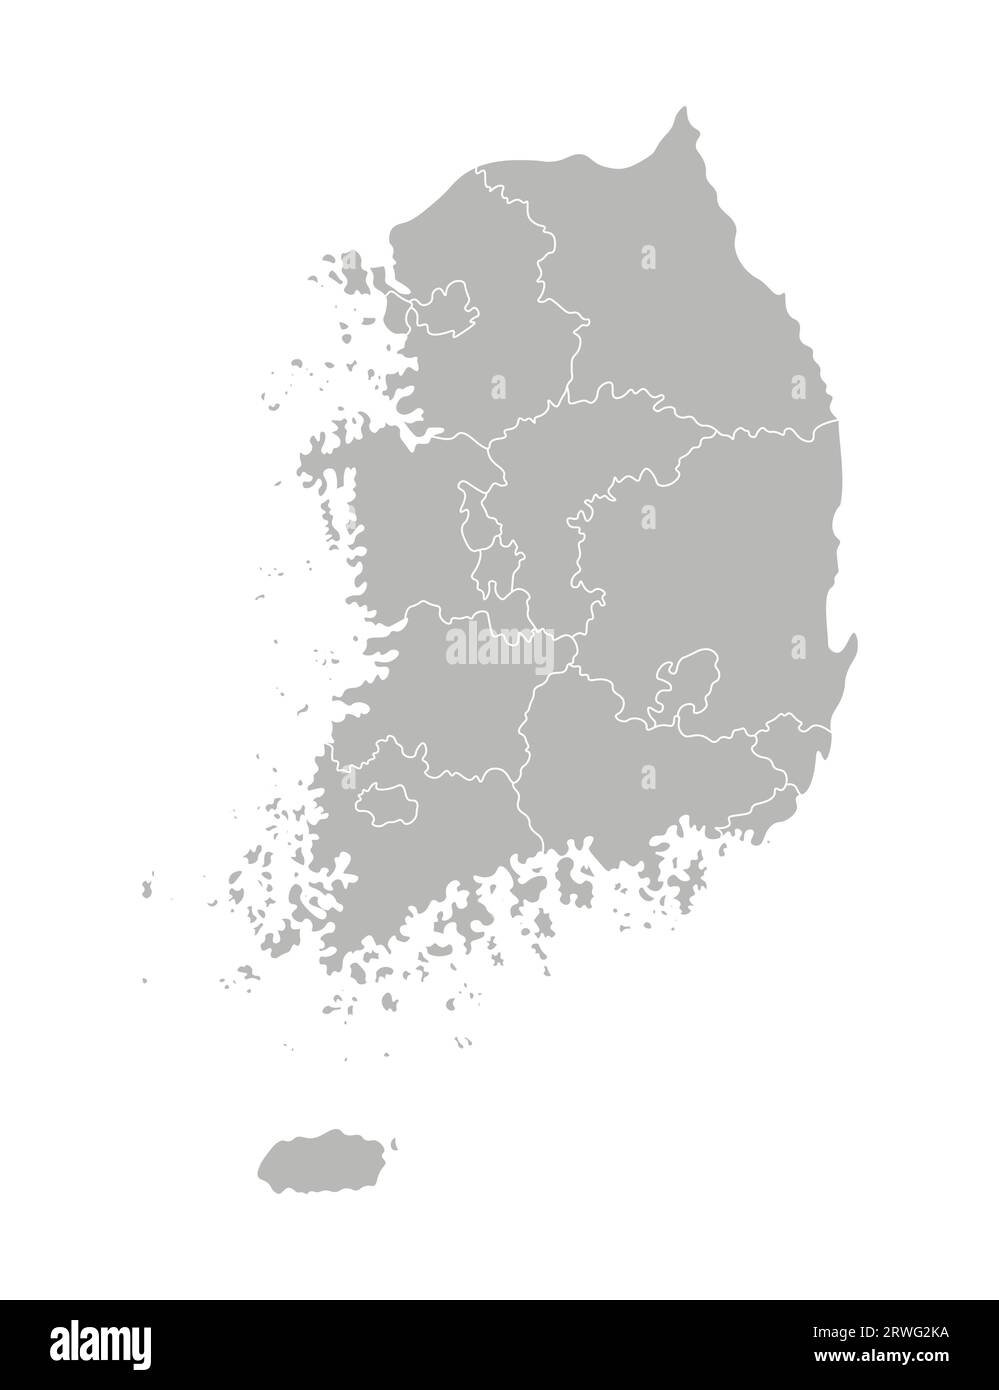 Illustrazione vettoriale isolata della mappa amministrativa semplificata della Corea del Sud (Repubblica di Corea). Confini delle province (regioni). Silhouette grigie Illustrazione Vettoriale